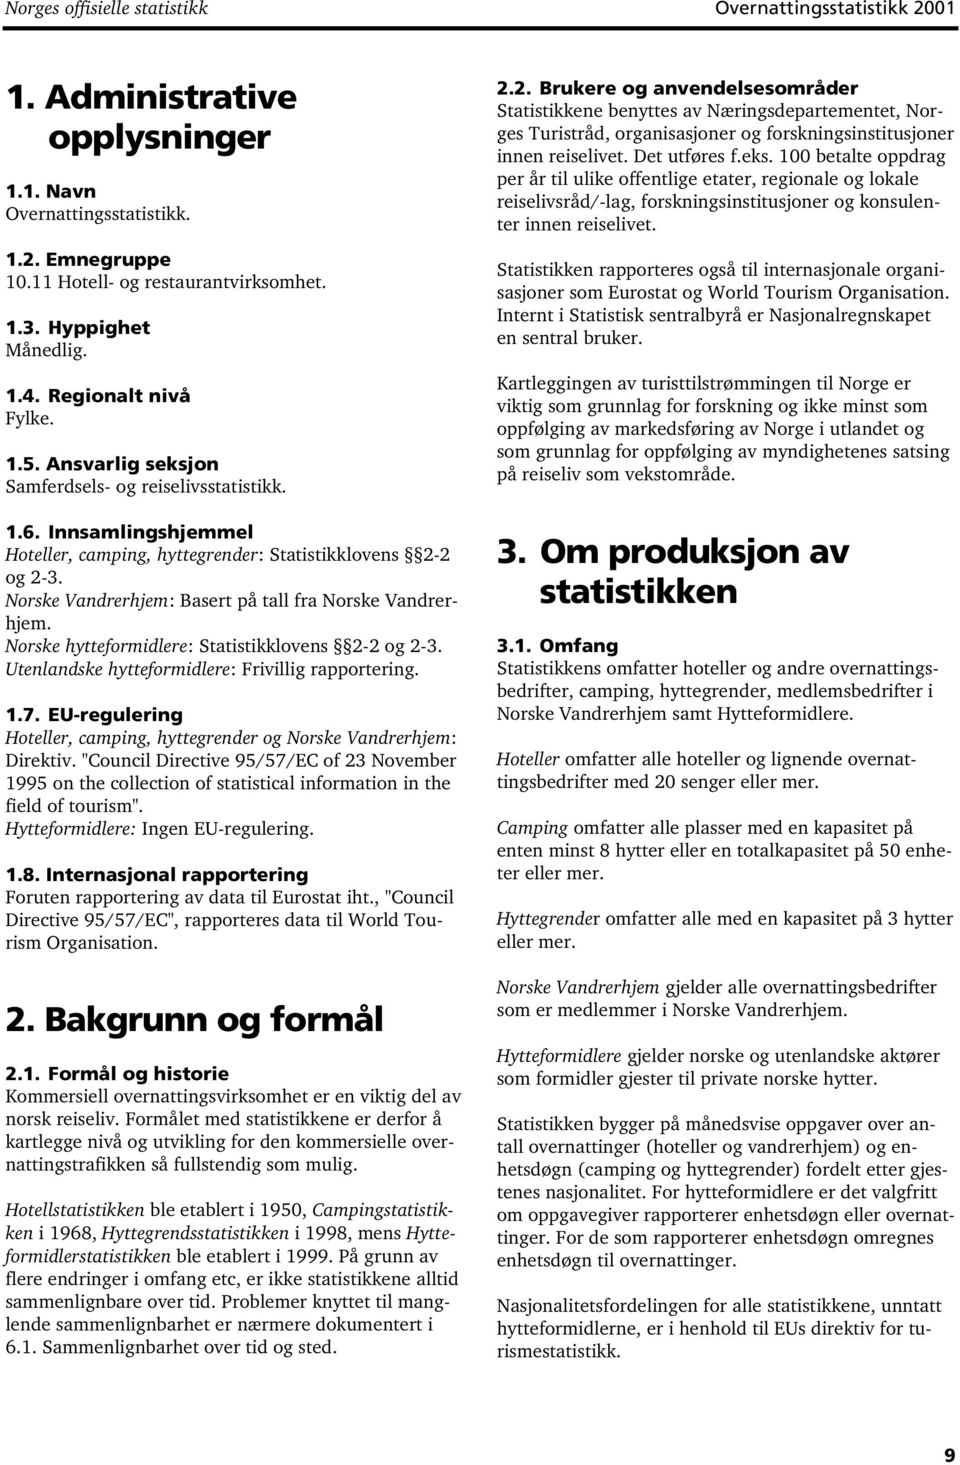 Norske Vandrerhjem: Basert på tall fra Norske Vandrerhjem. Norske hytteformidlere: Statistikklovens 2-2 og 2-3. Utenlandske hytteformidlere: Frivillig rapportering. 1.7.